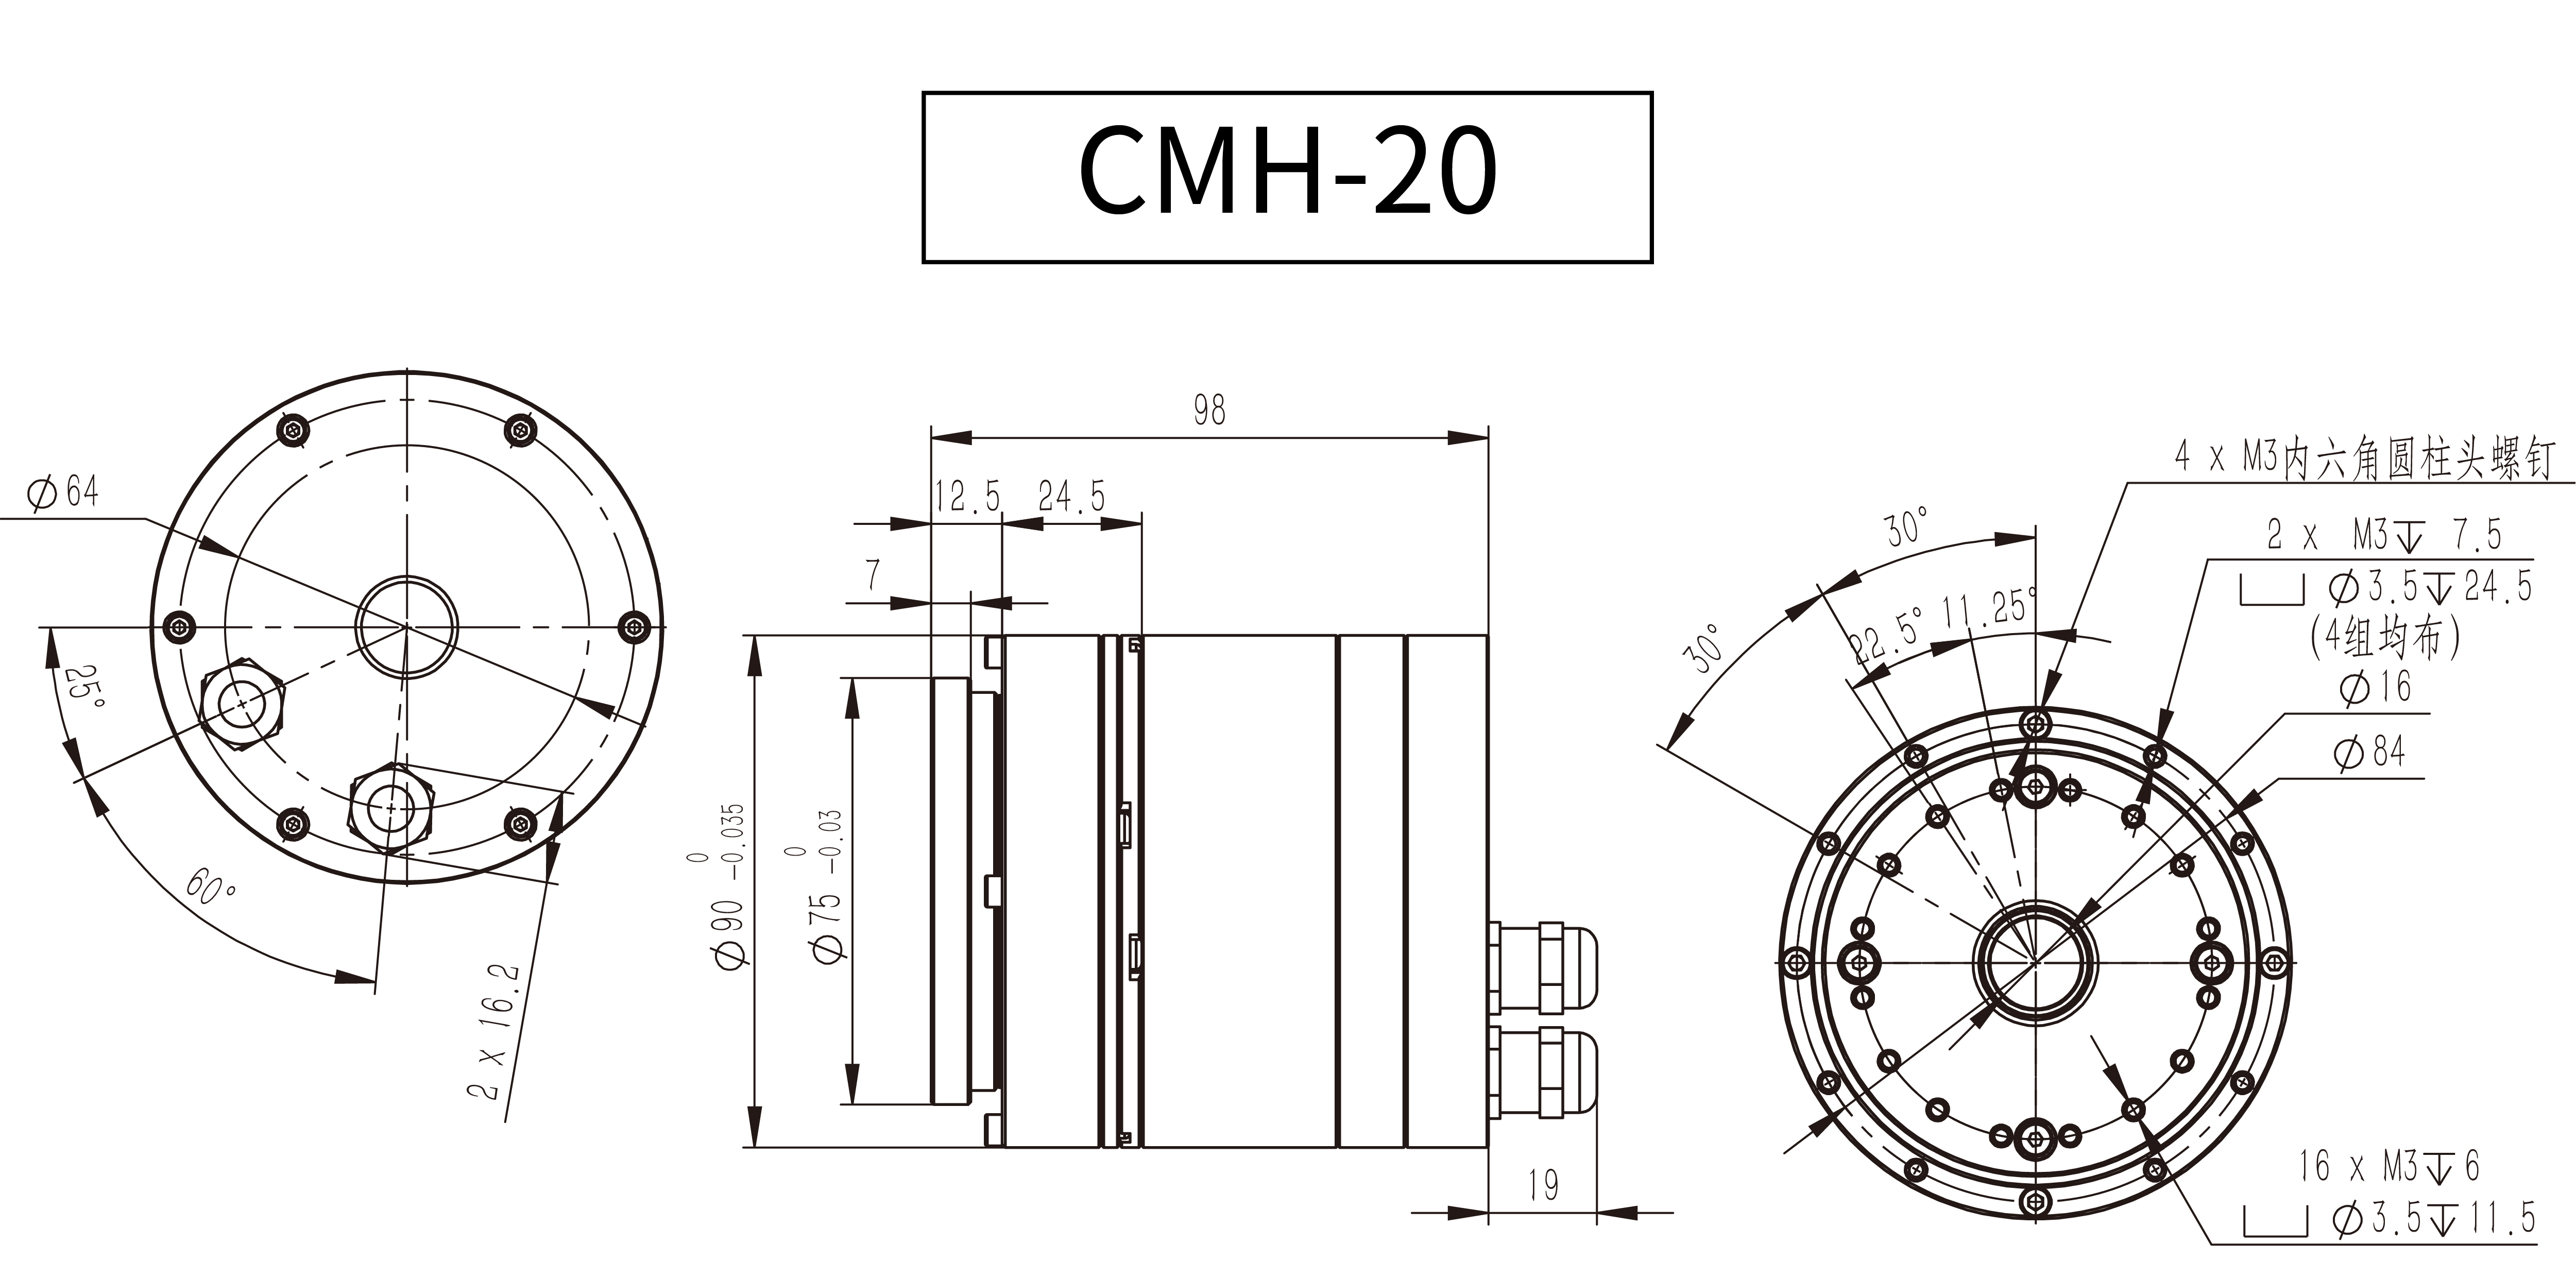 高压模组_CMH-20.jpg